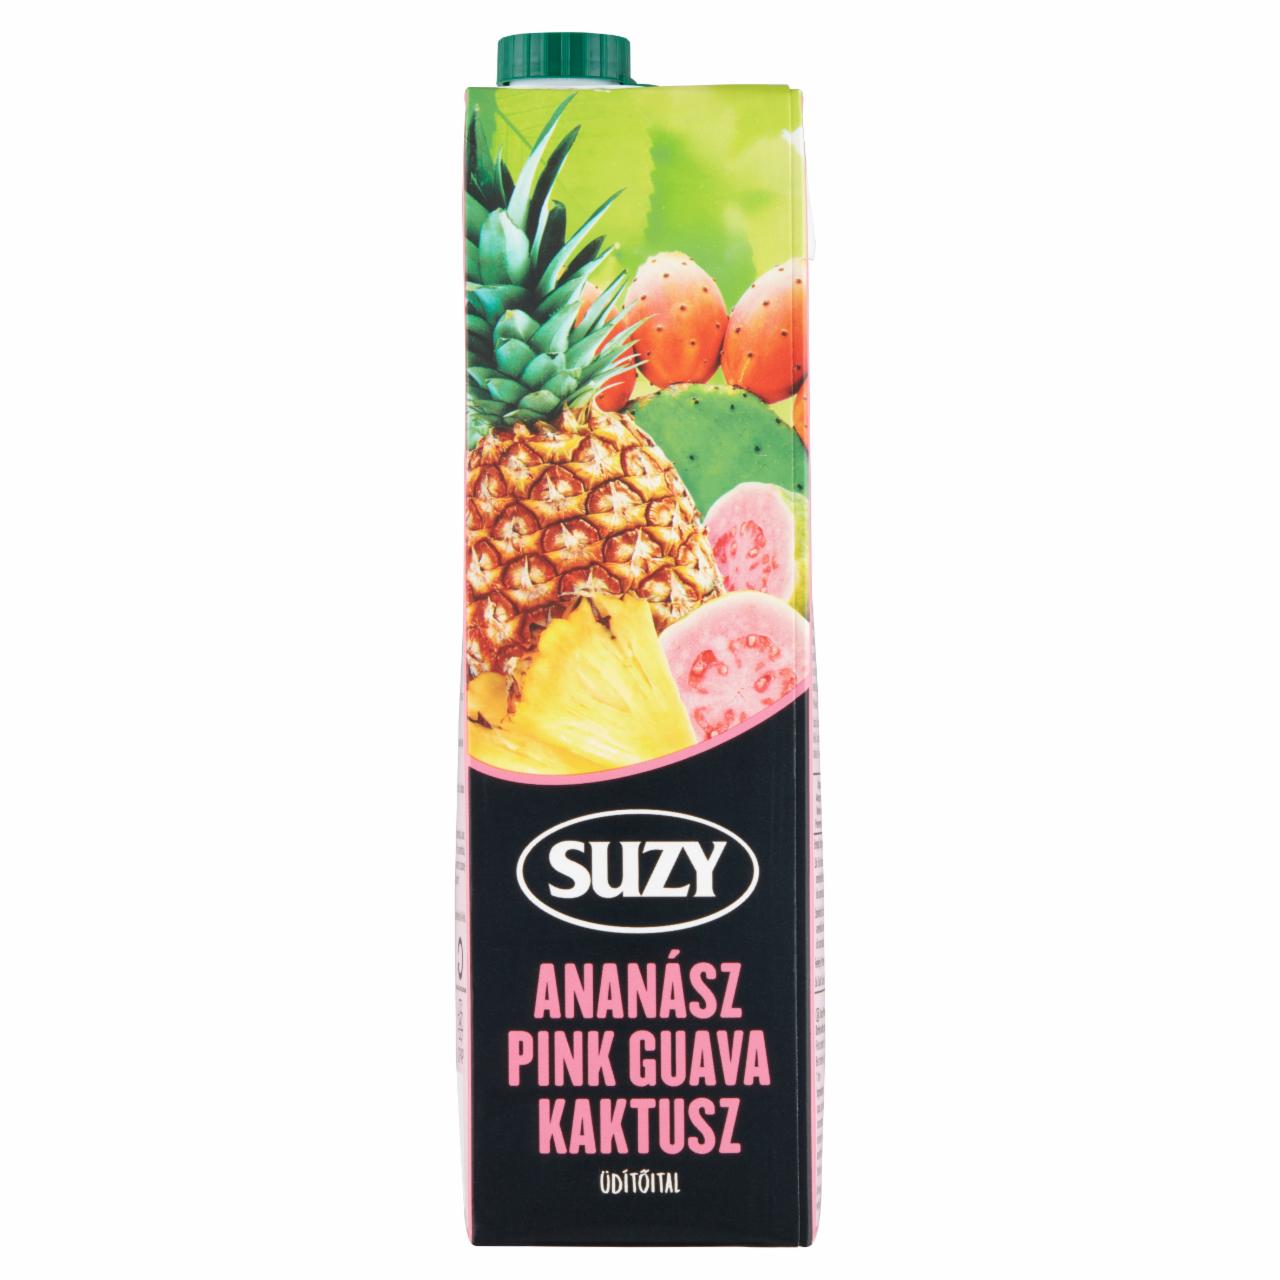 Képek - Suzy Exotic ananász-pink guava-kaktusz üdítőital cukorral és édesítőszerekkel 1 l